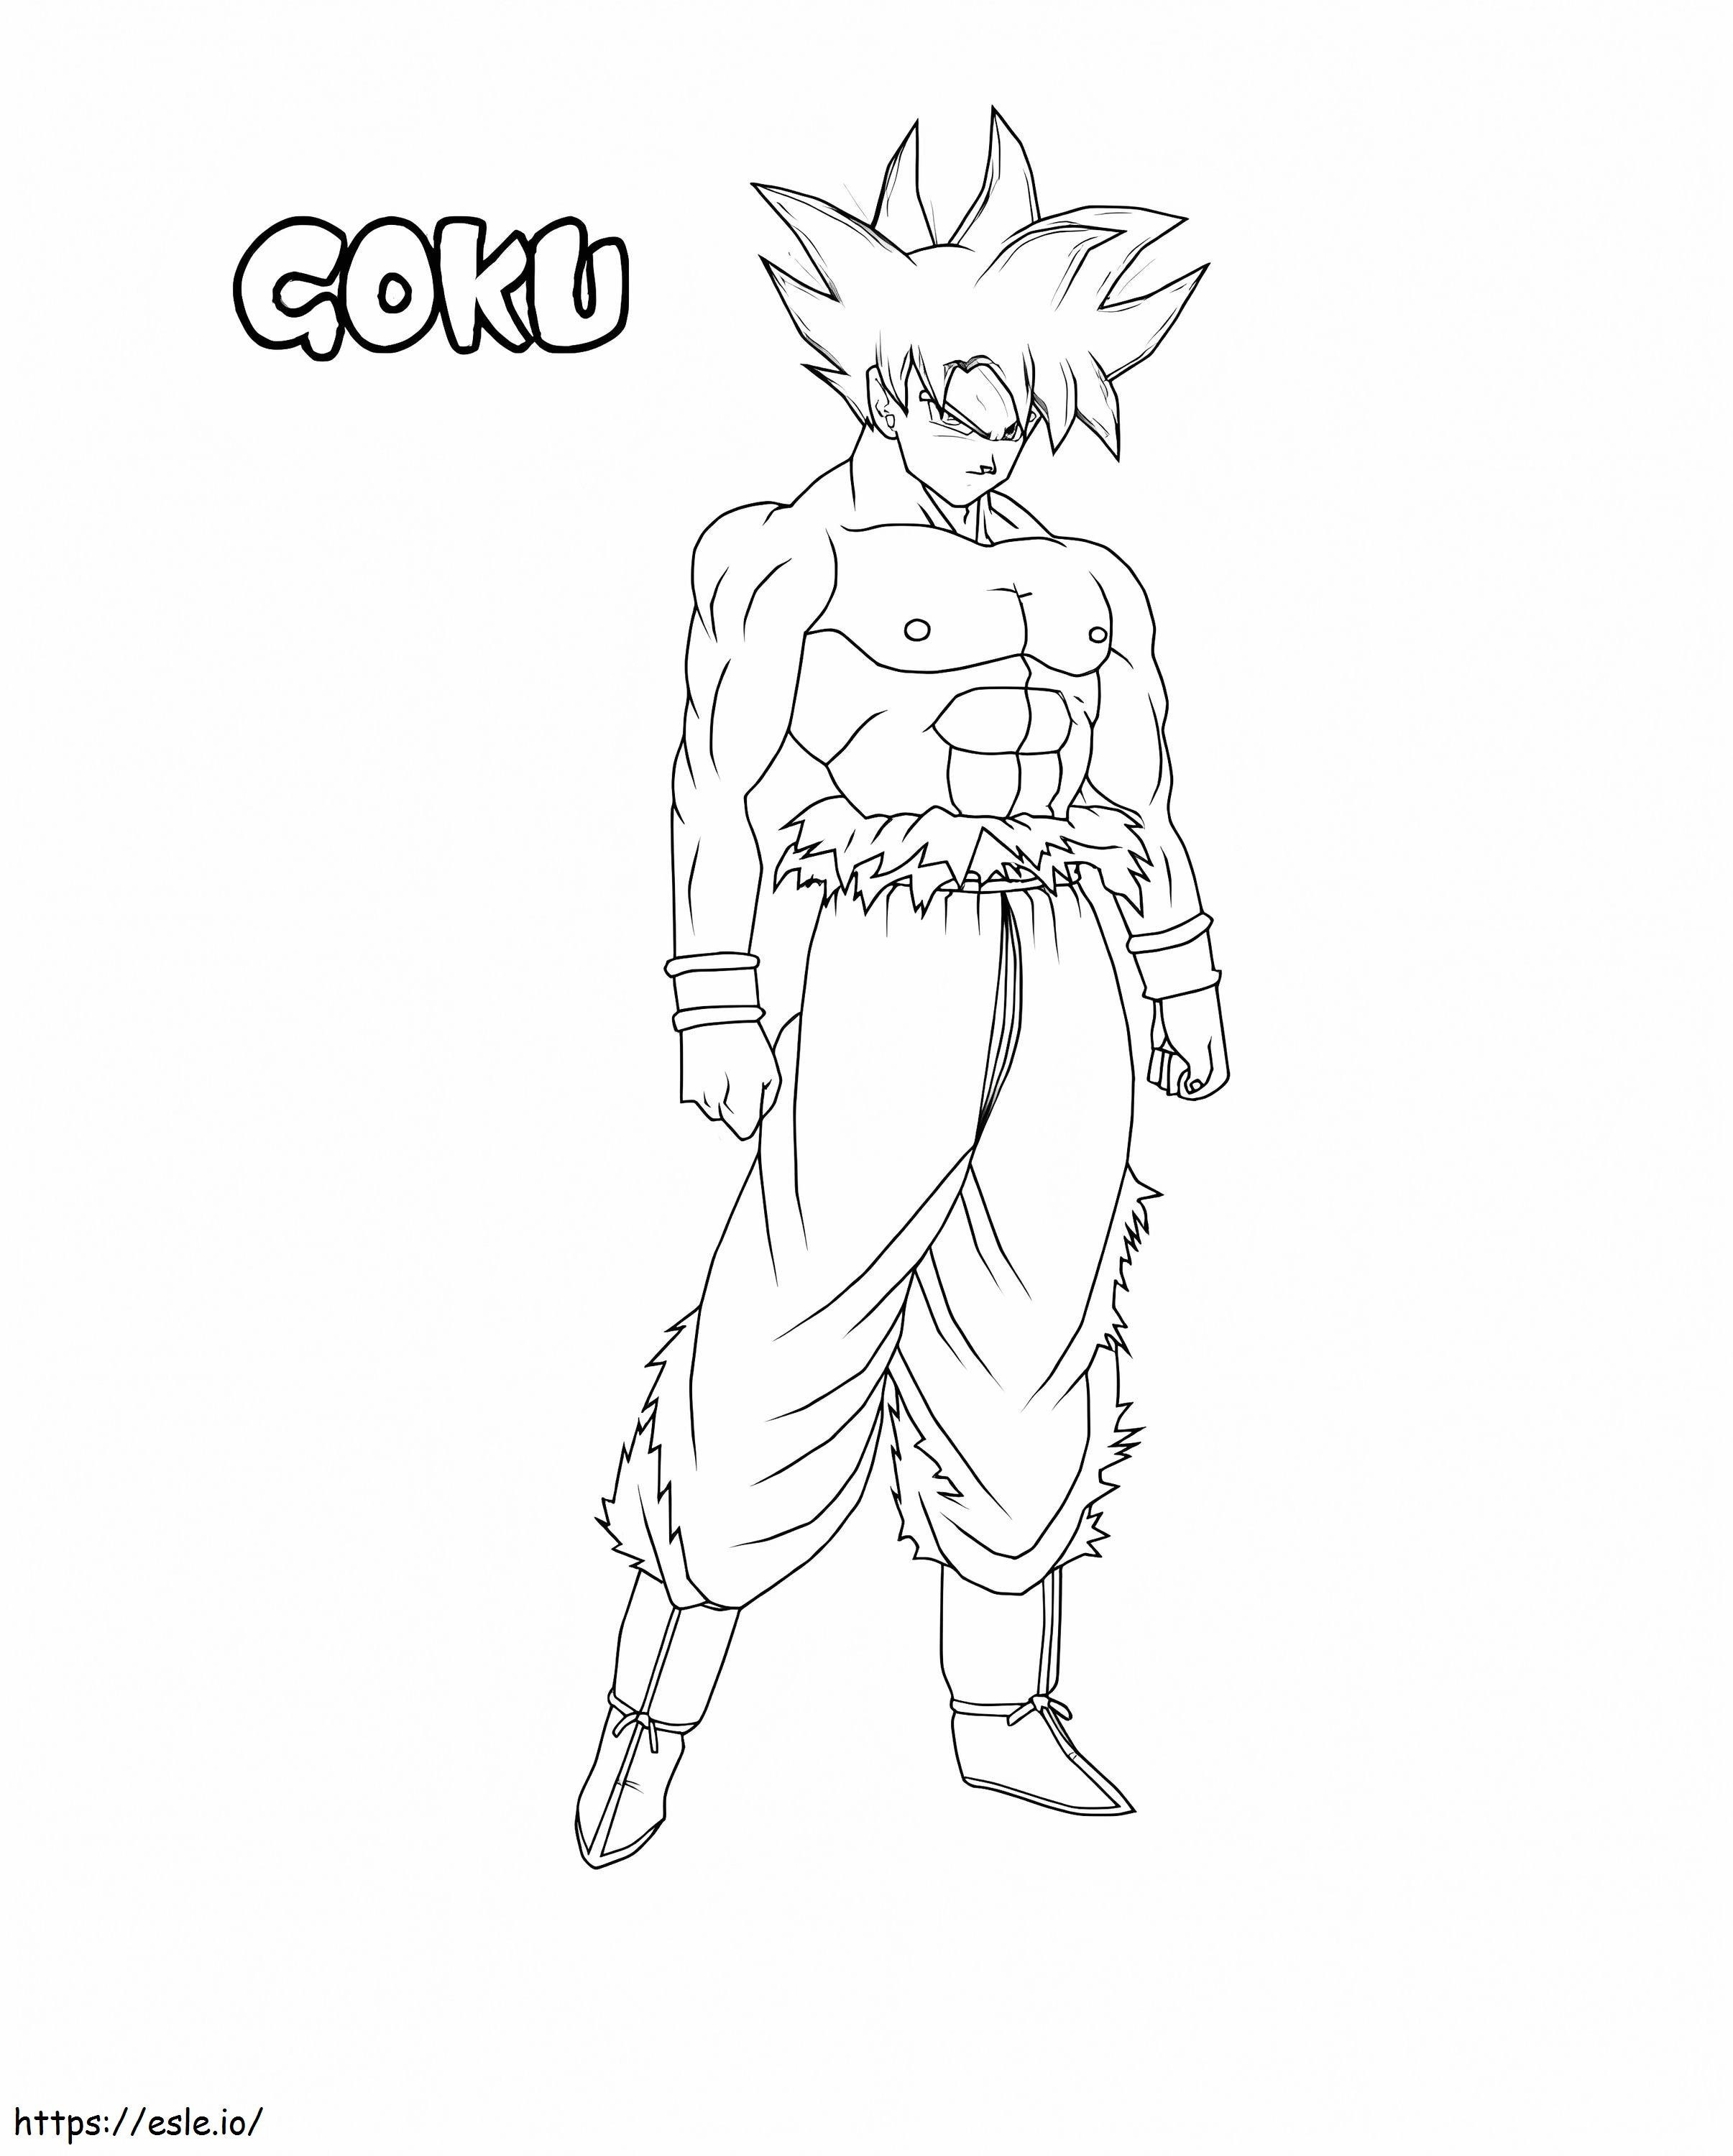 Coloriage Goku Ultra Instinto à imprimer dessin